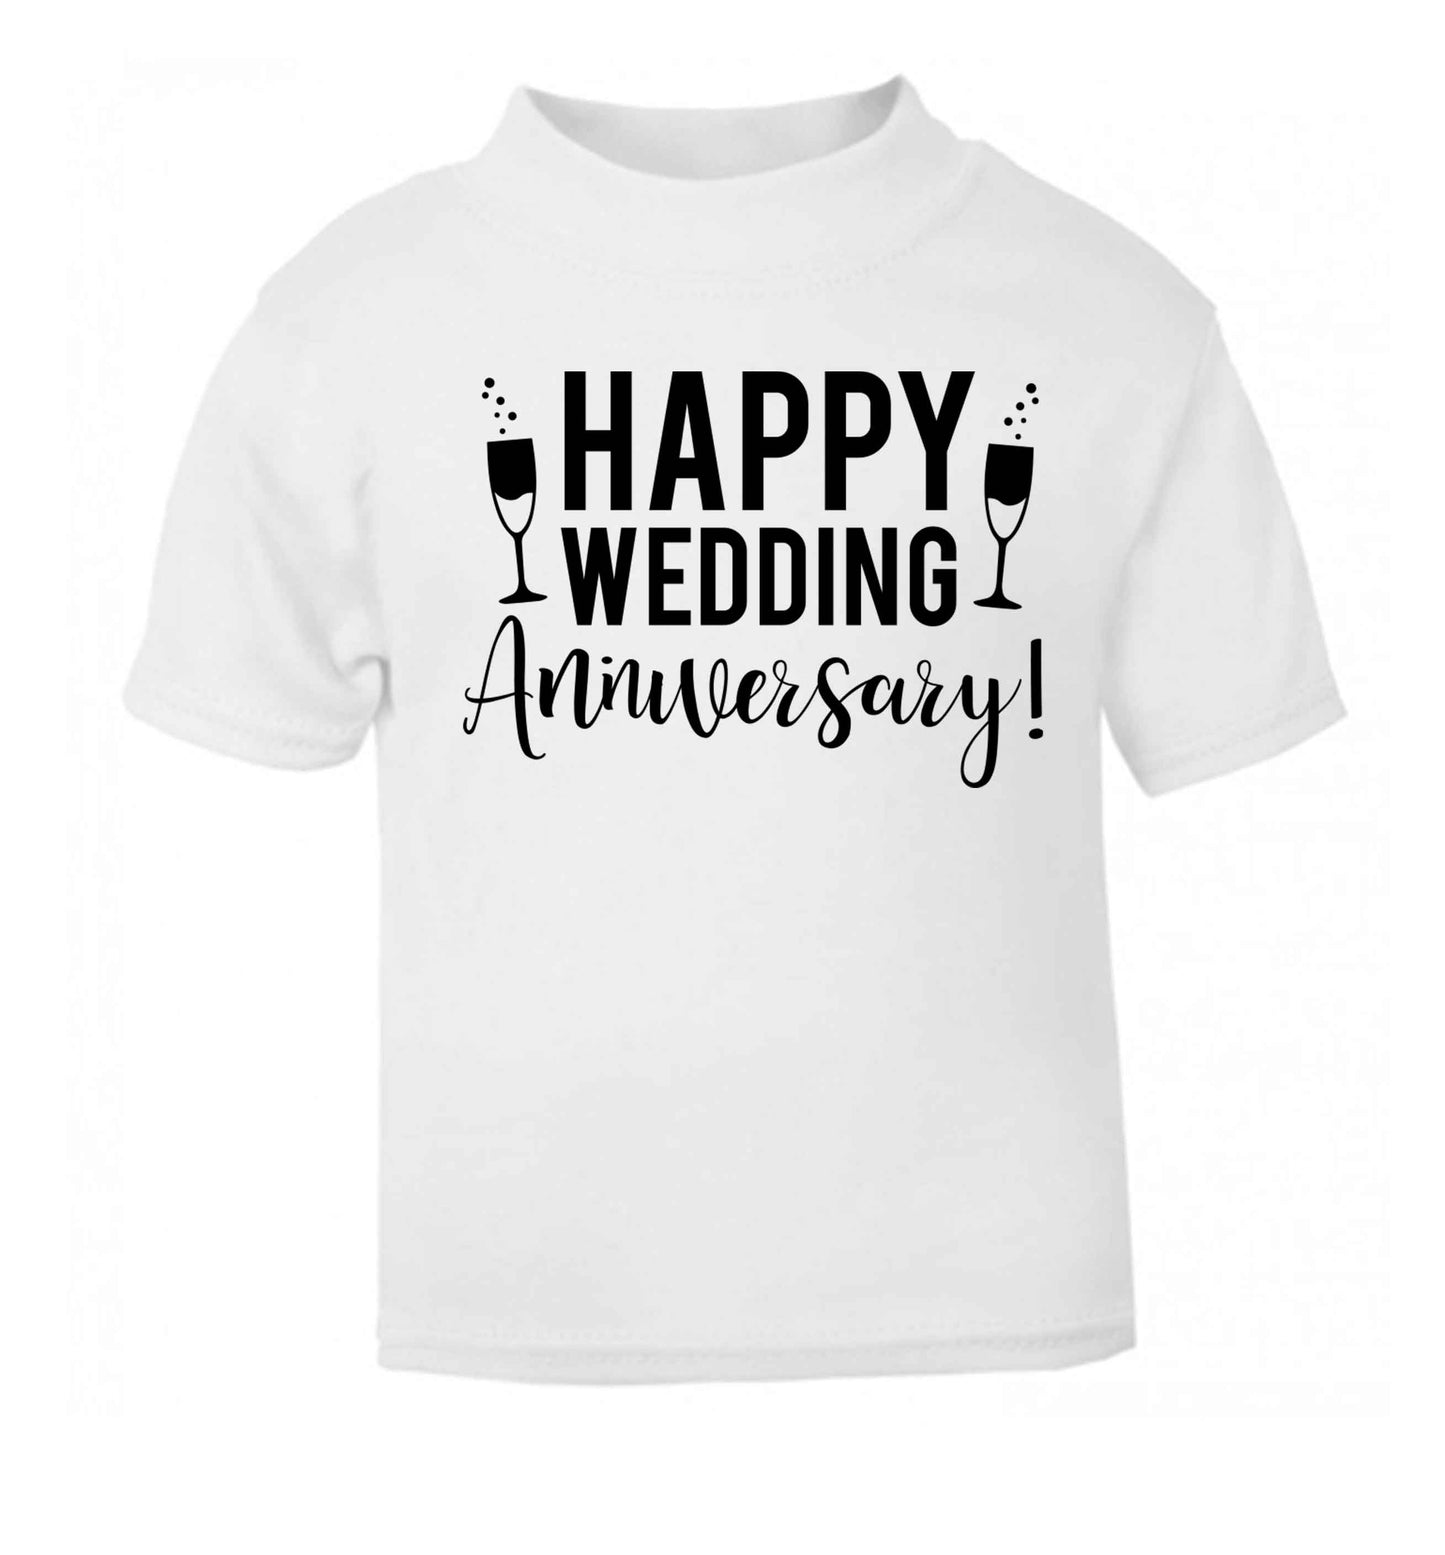 Happy wedding anniversary! white baby toddler Tshirt 2 Years